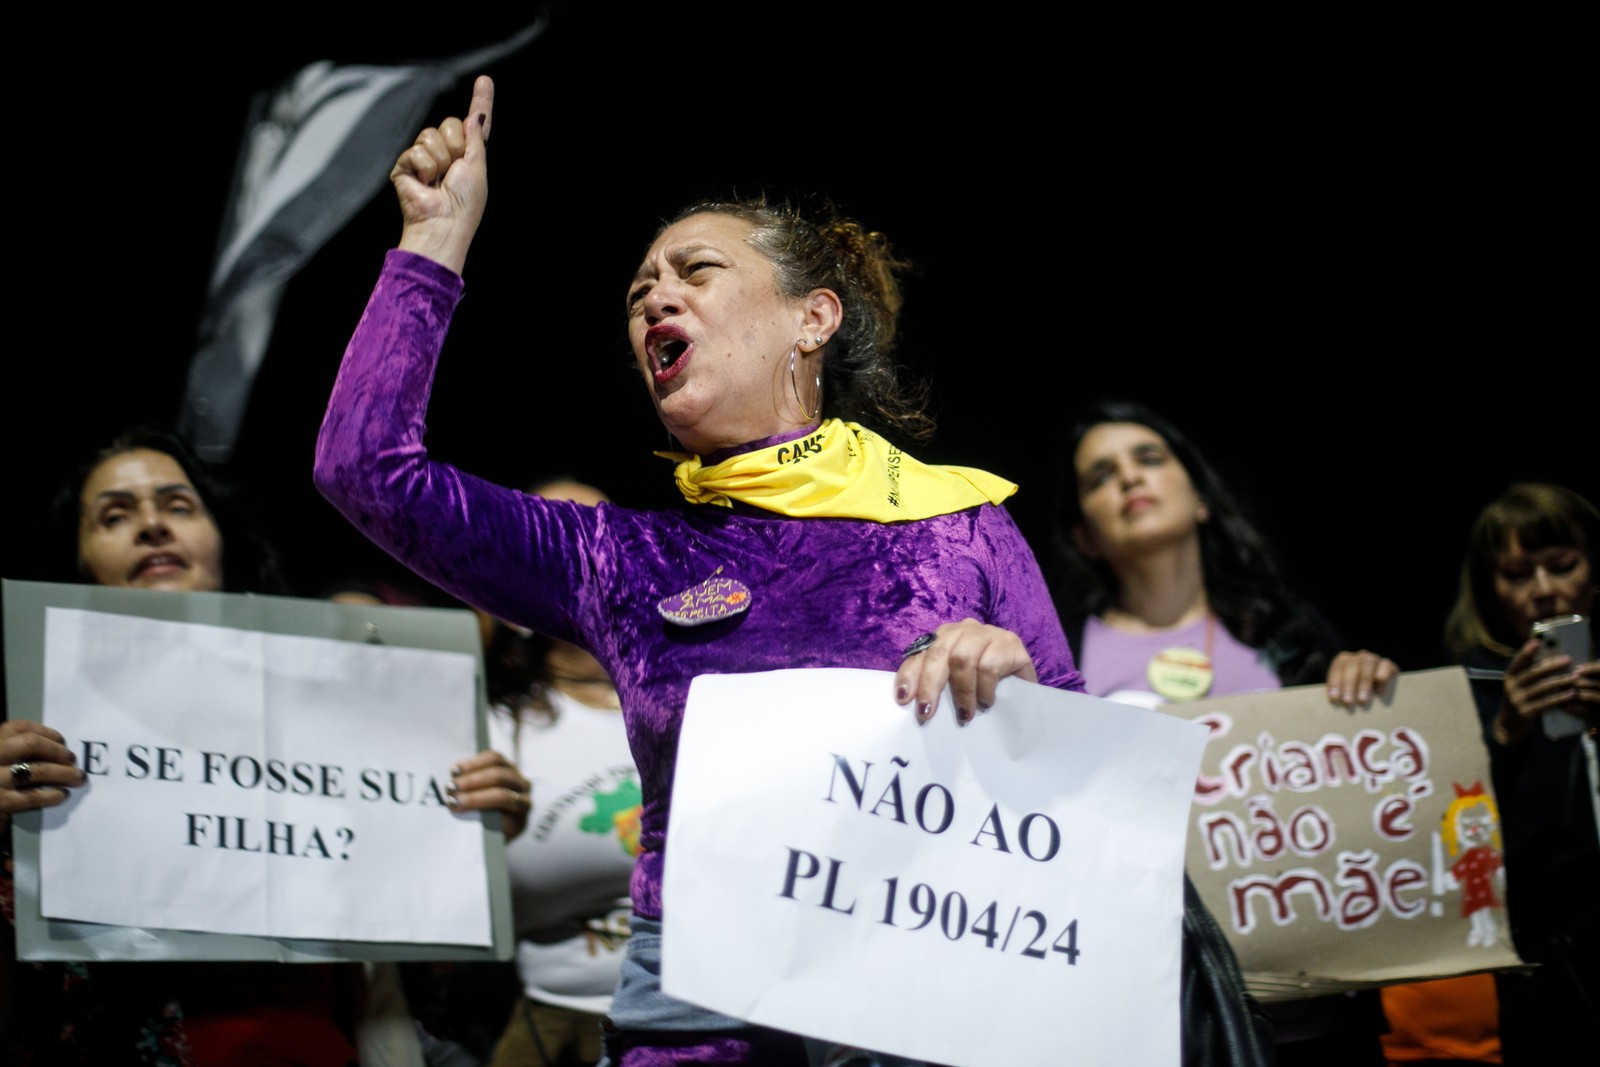 Ato em Brasília contra a PL1904 - PL da Gravidez Infantil (PL 1904/24) proíbe a realização do aborto legal acima de 22 semanas gestacional em caso de estupro. — Foto: Brenno Carvalho / Agência O Globo.